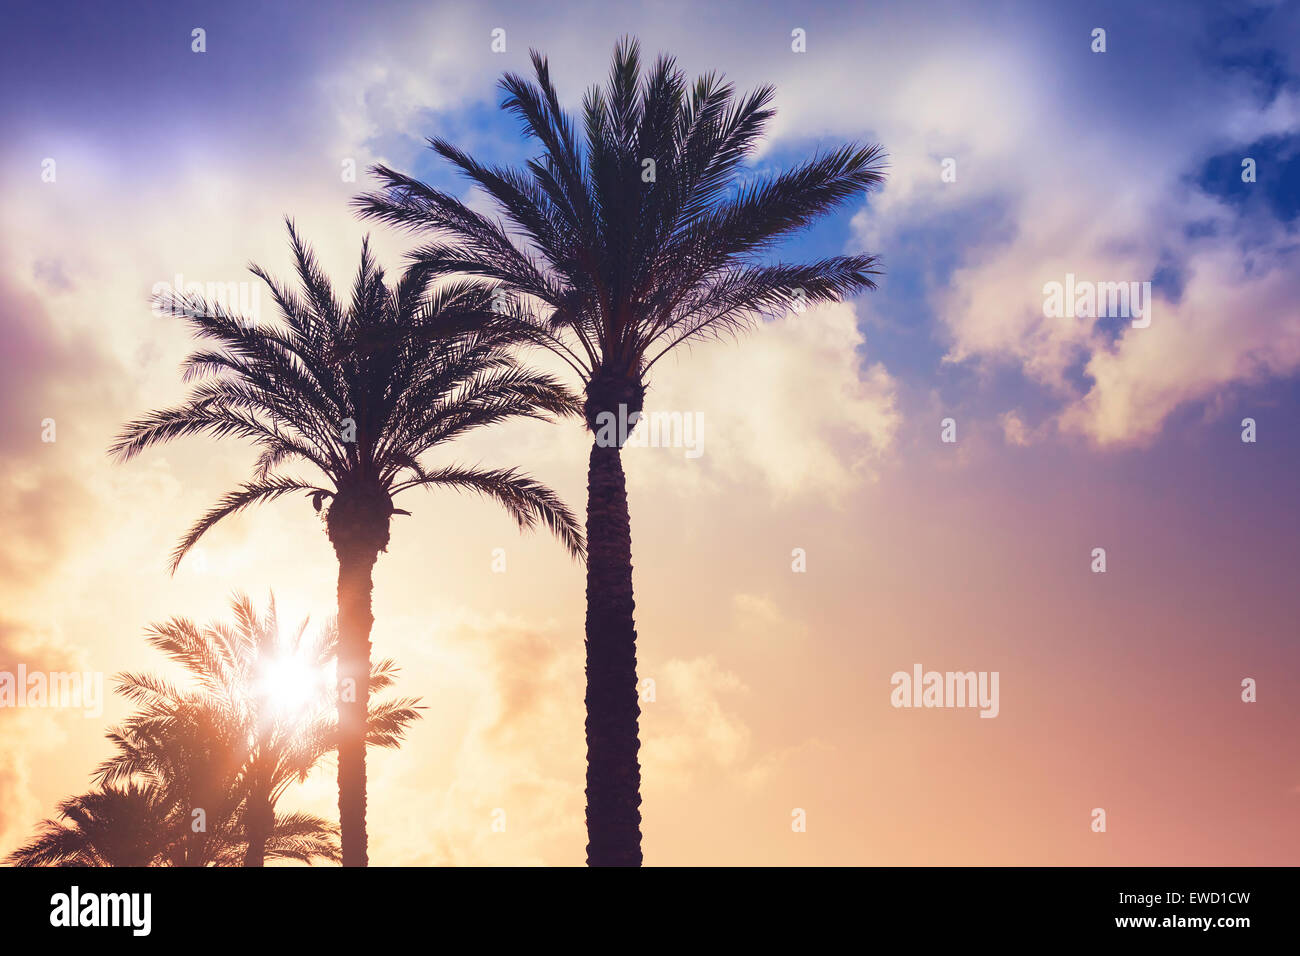 Palmiers et soleil brillant sur fond de ciel nuageux. Vintage style. Photo avec effet de filtre aux tons colorés Banque D'Images